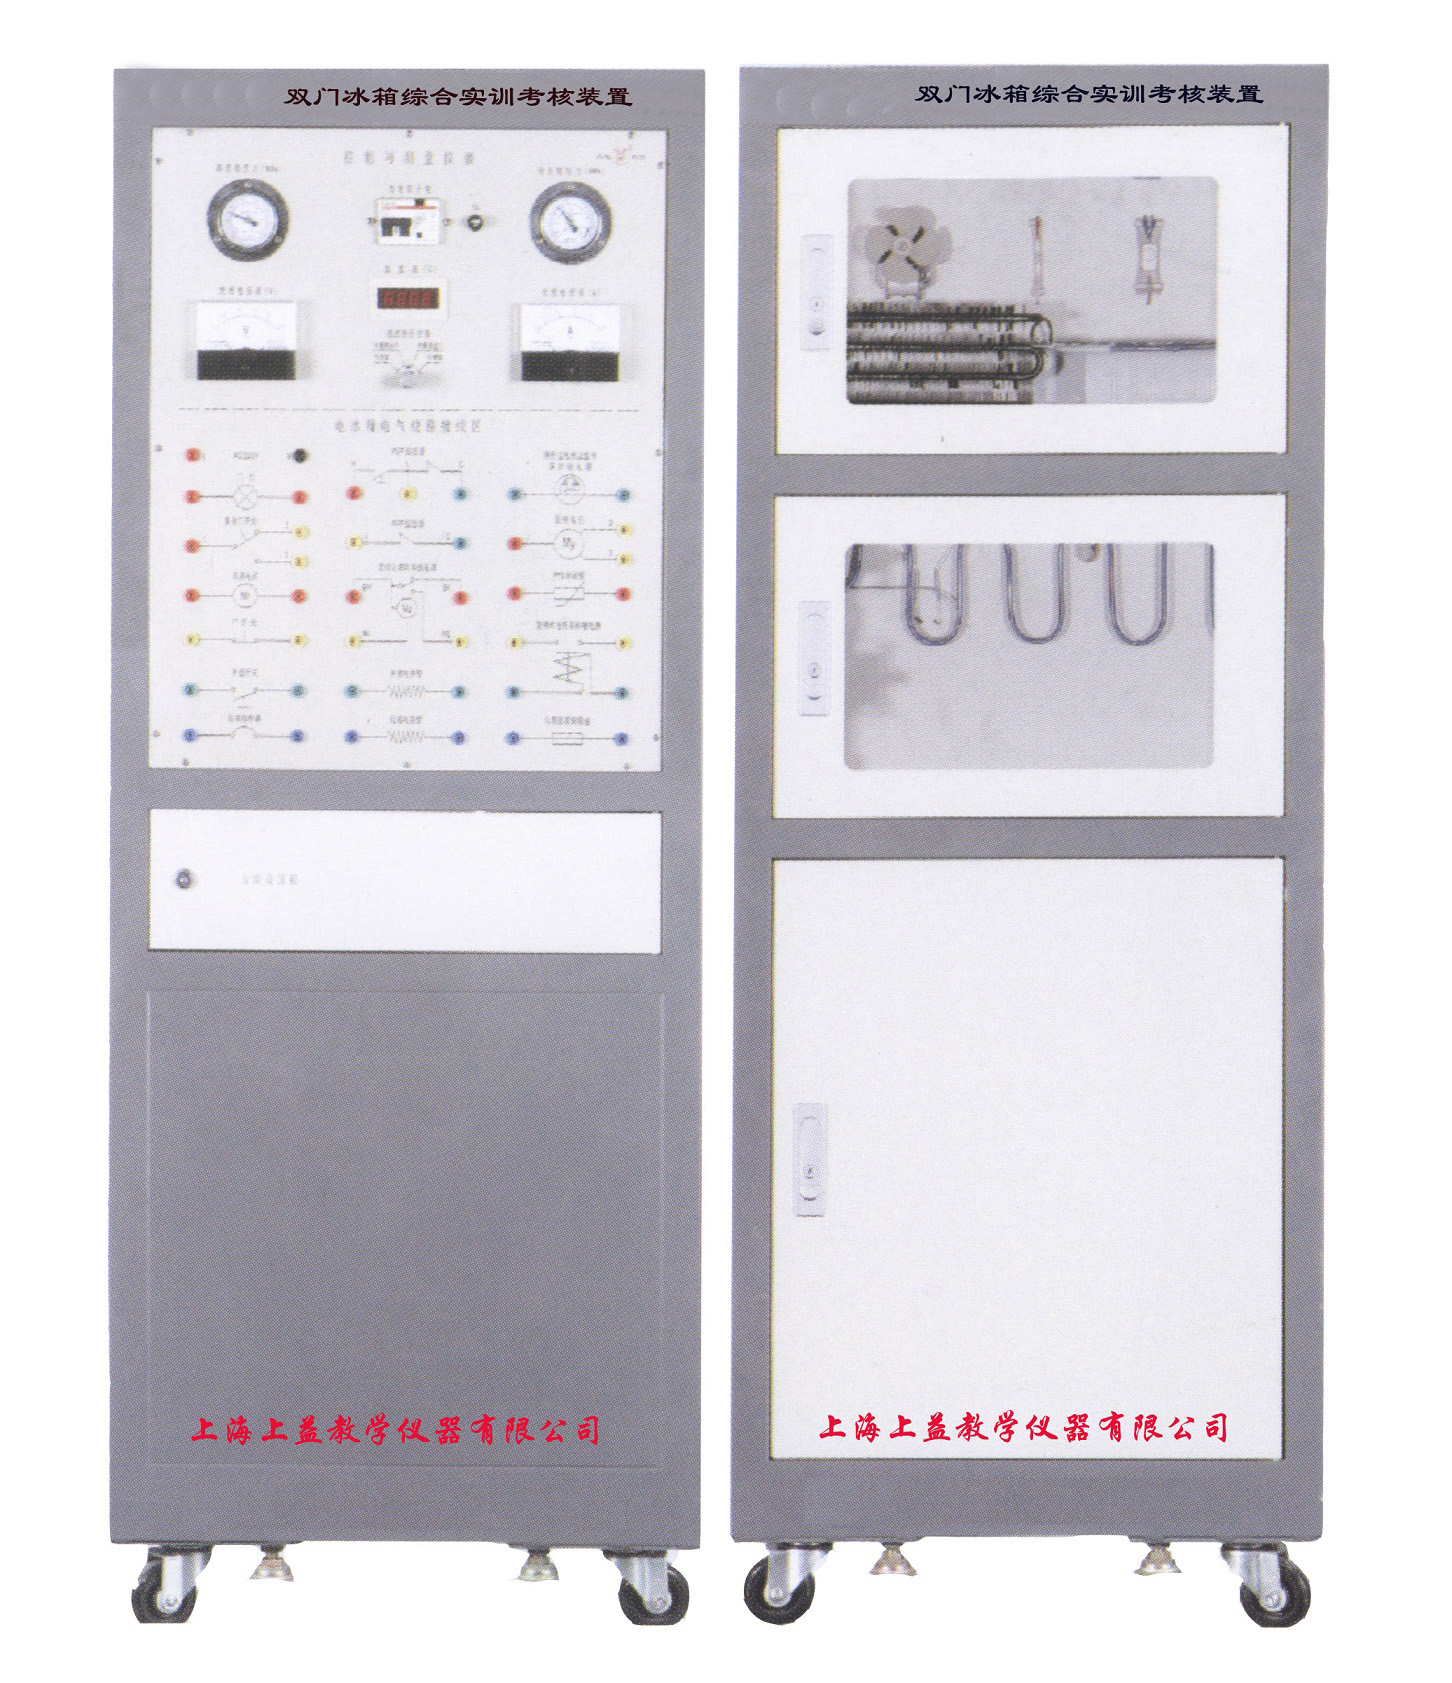 双门电冰箱综合实训考核装置